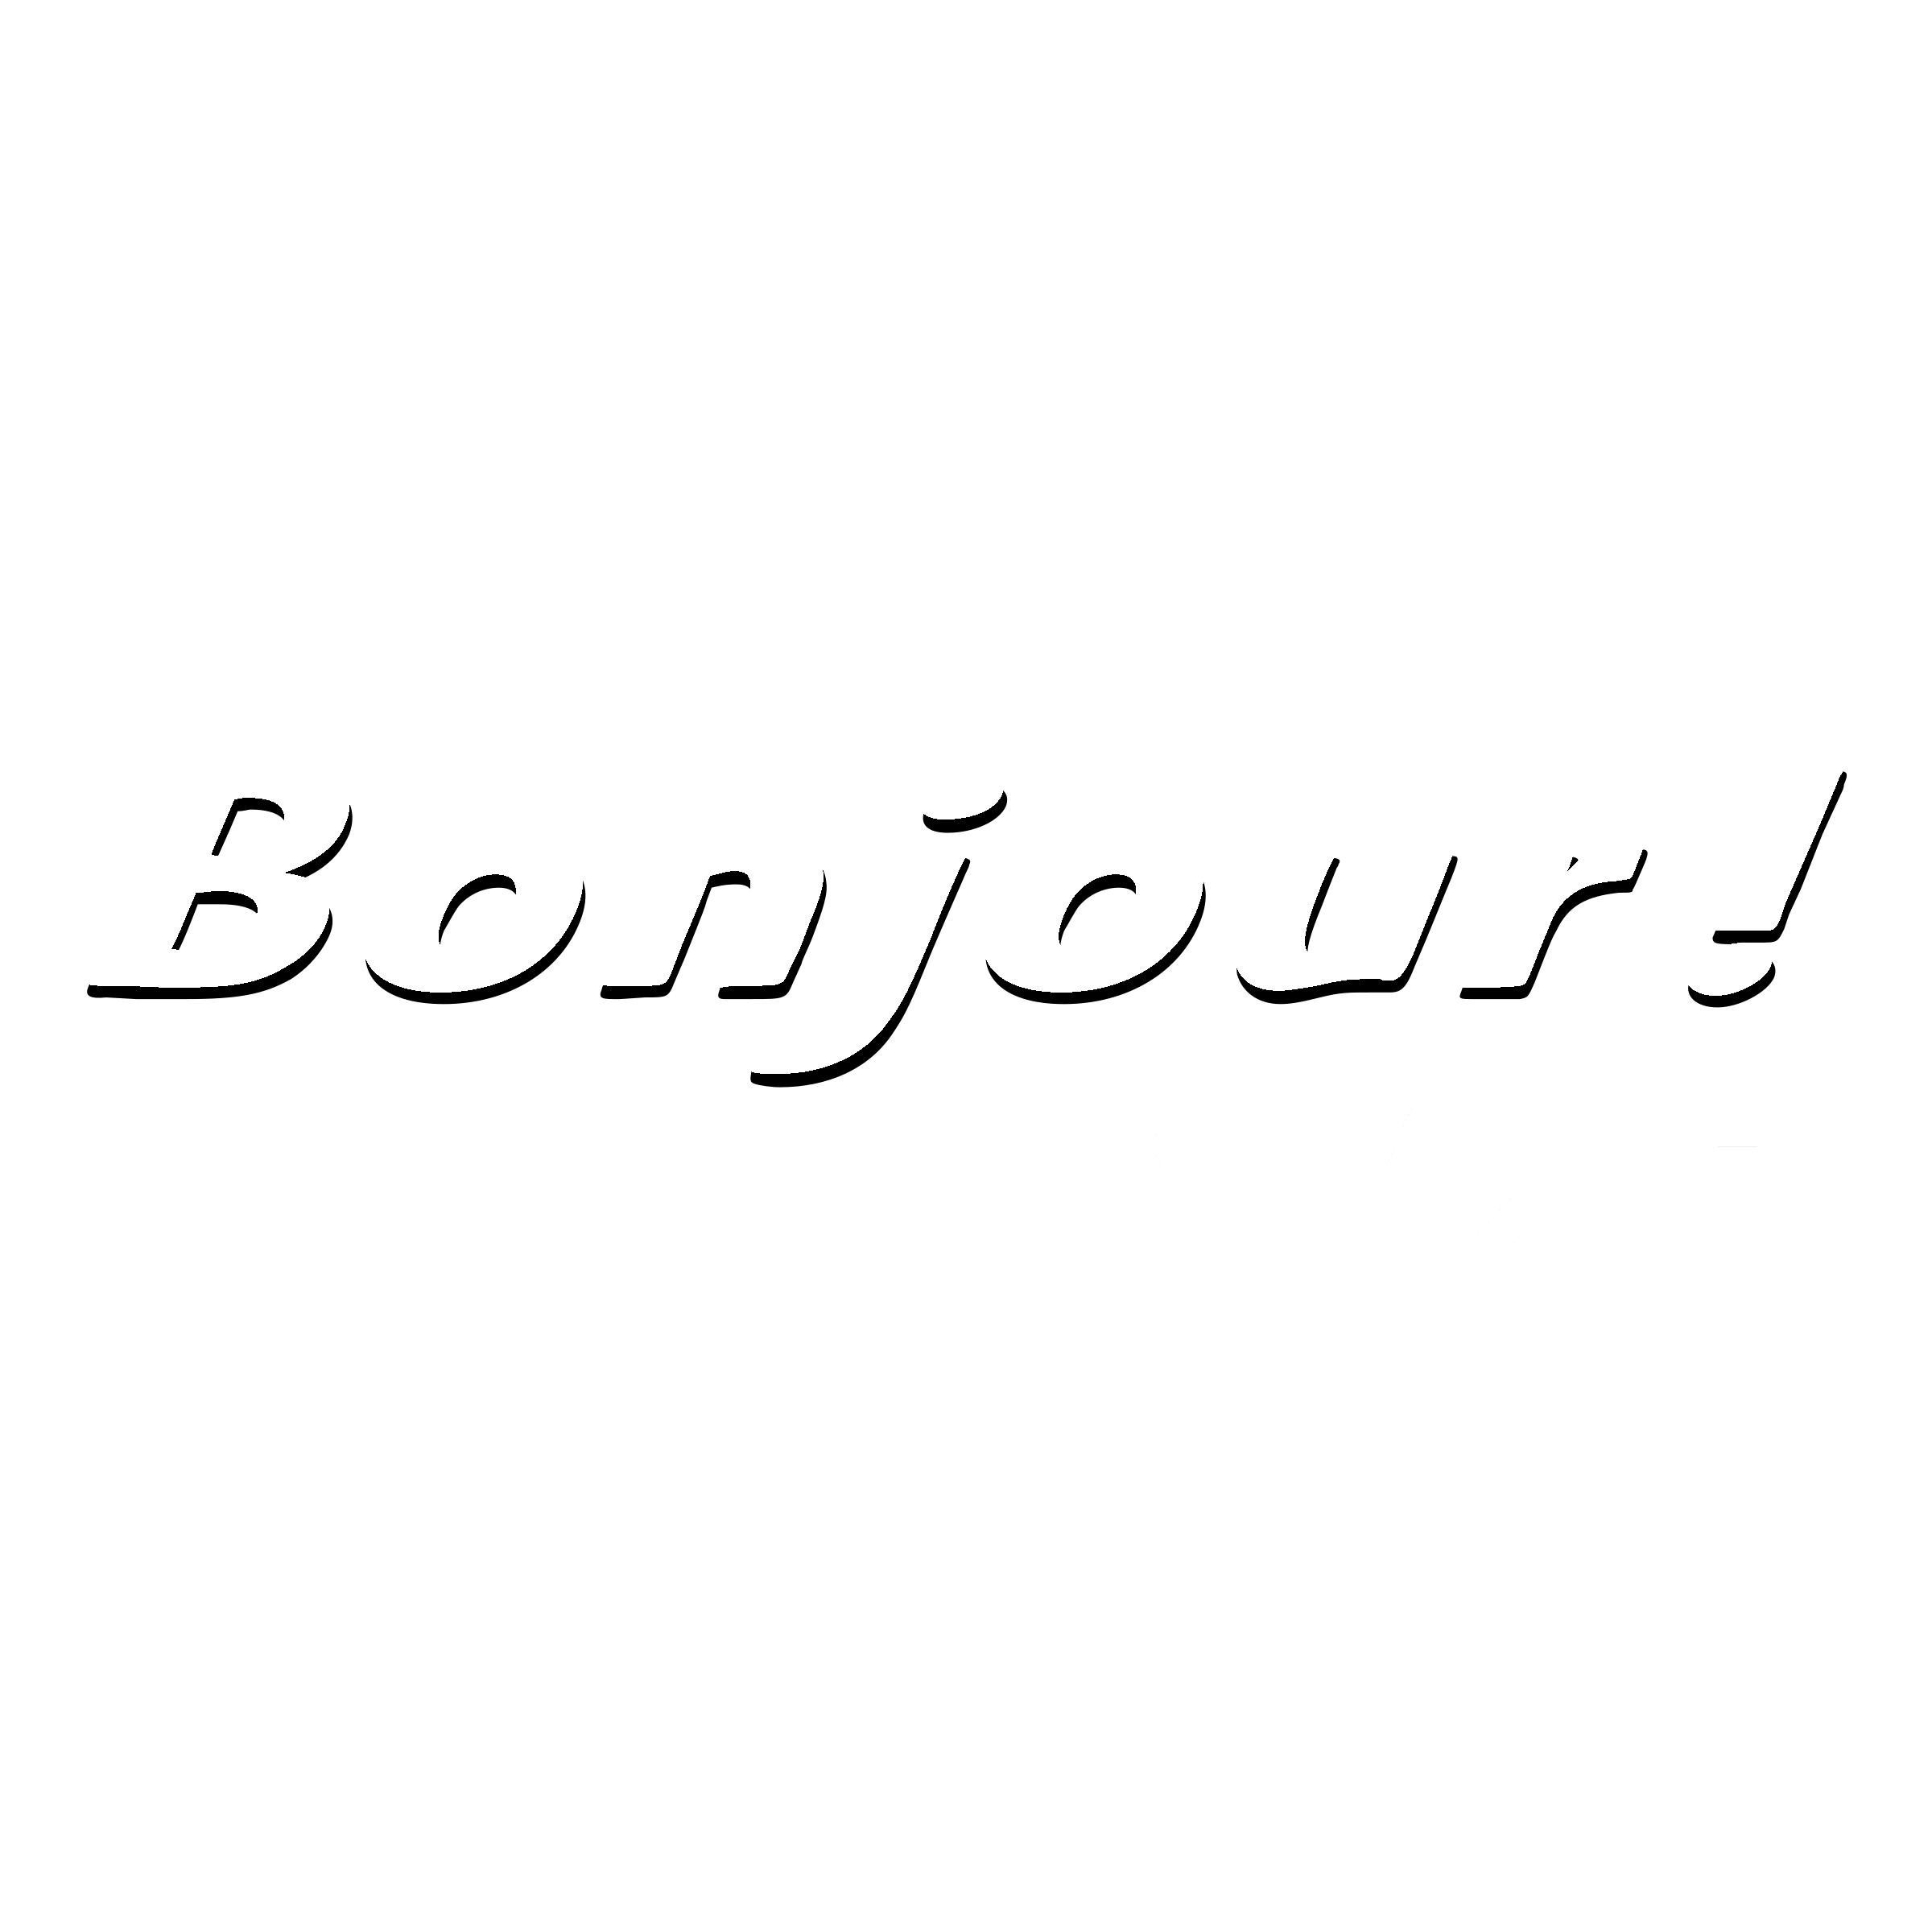 Bonjour Logo - Bonjour! Logo PNG Transparent & SVG Vector - Freebie Supply